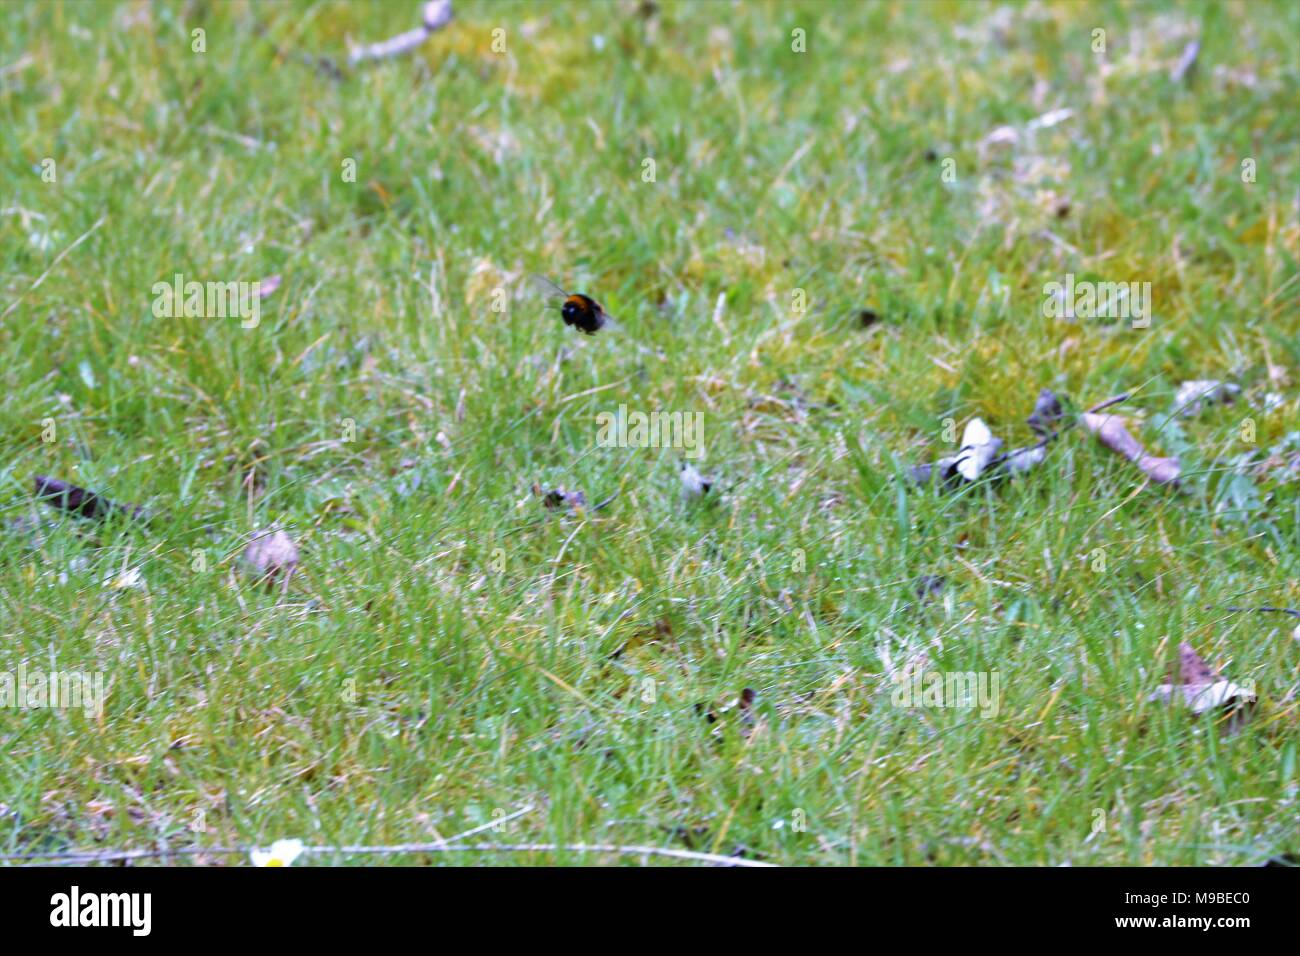 En vuelo de abejorros en pasto en la primavera Foto de stock